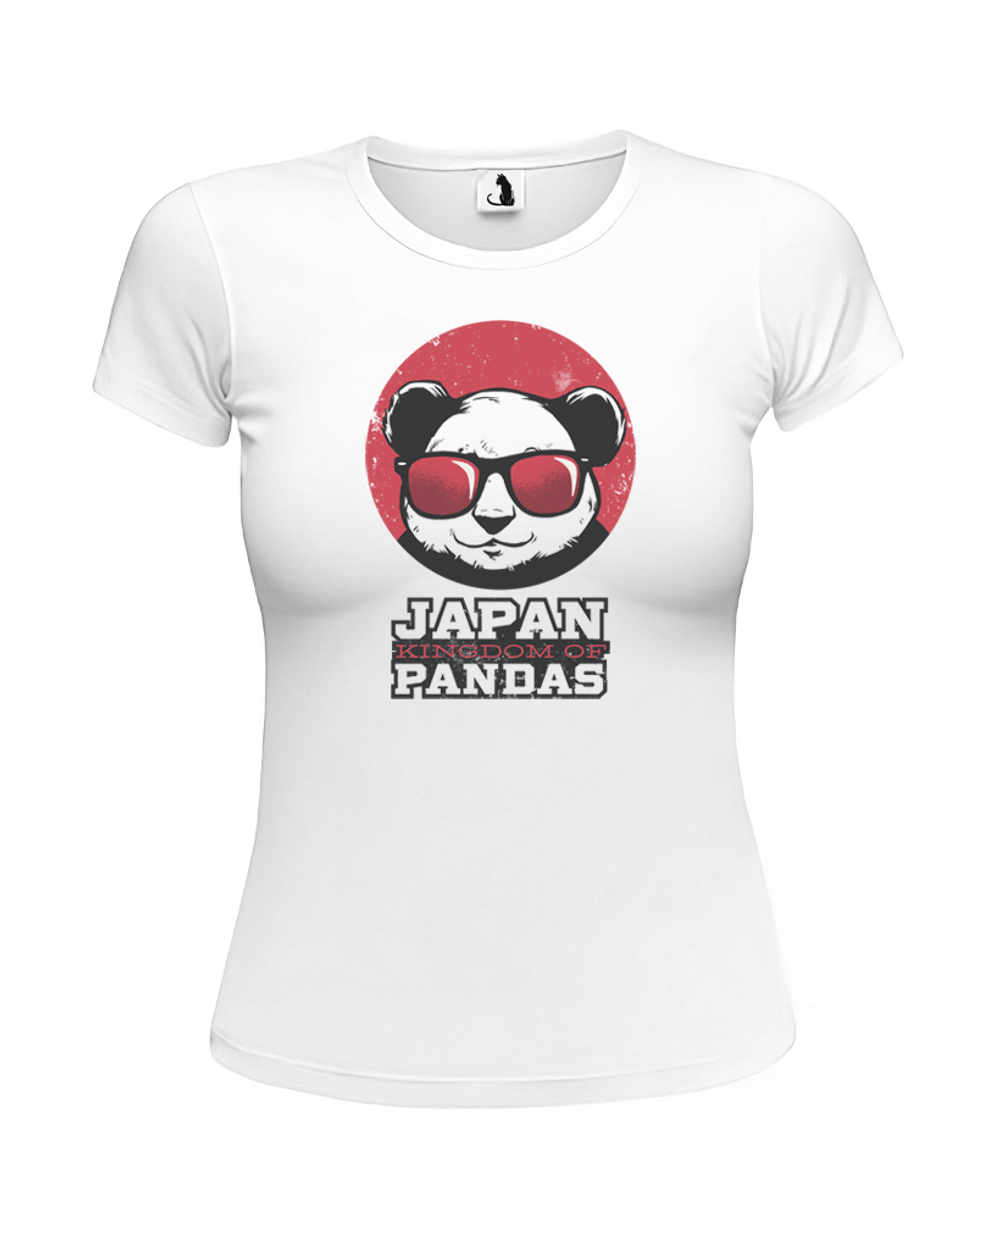 Футболка Япония - королевство панд женская приталенная белая